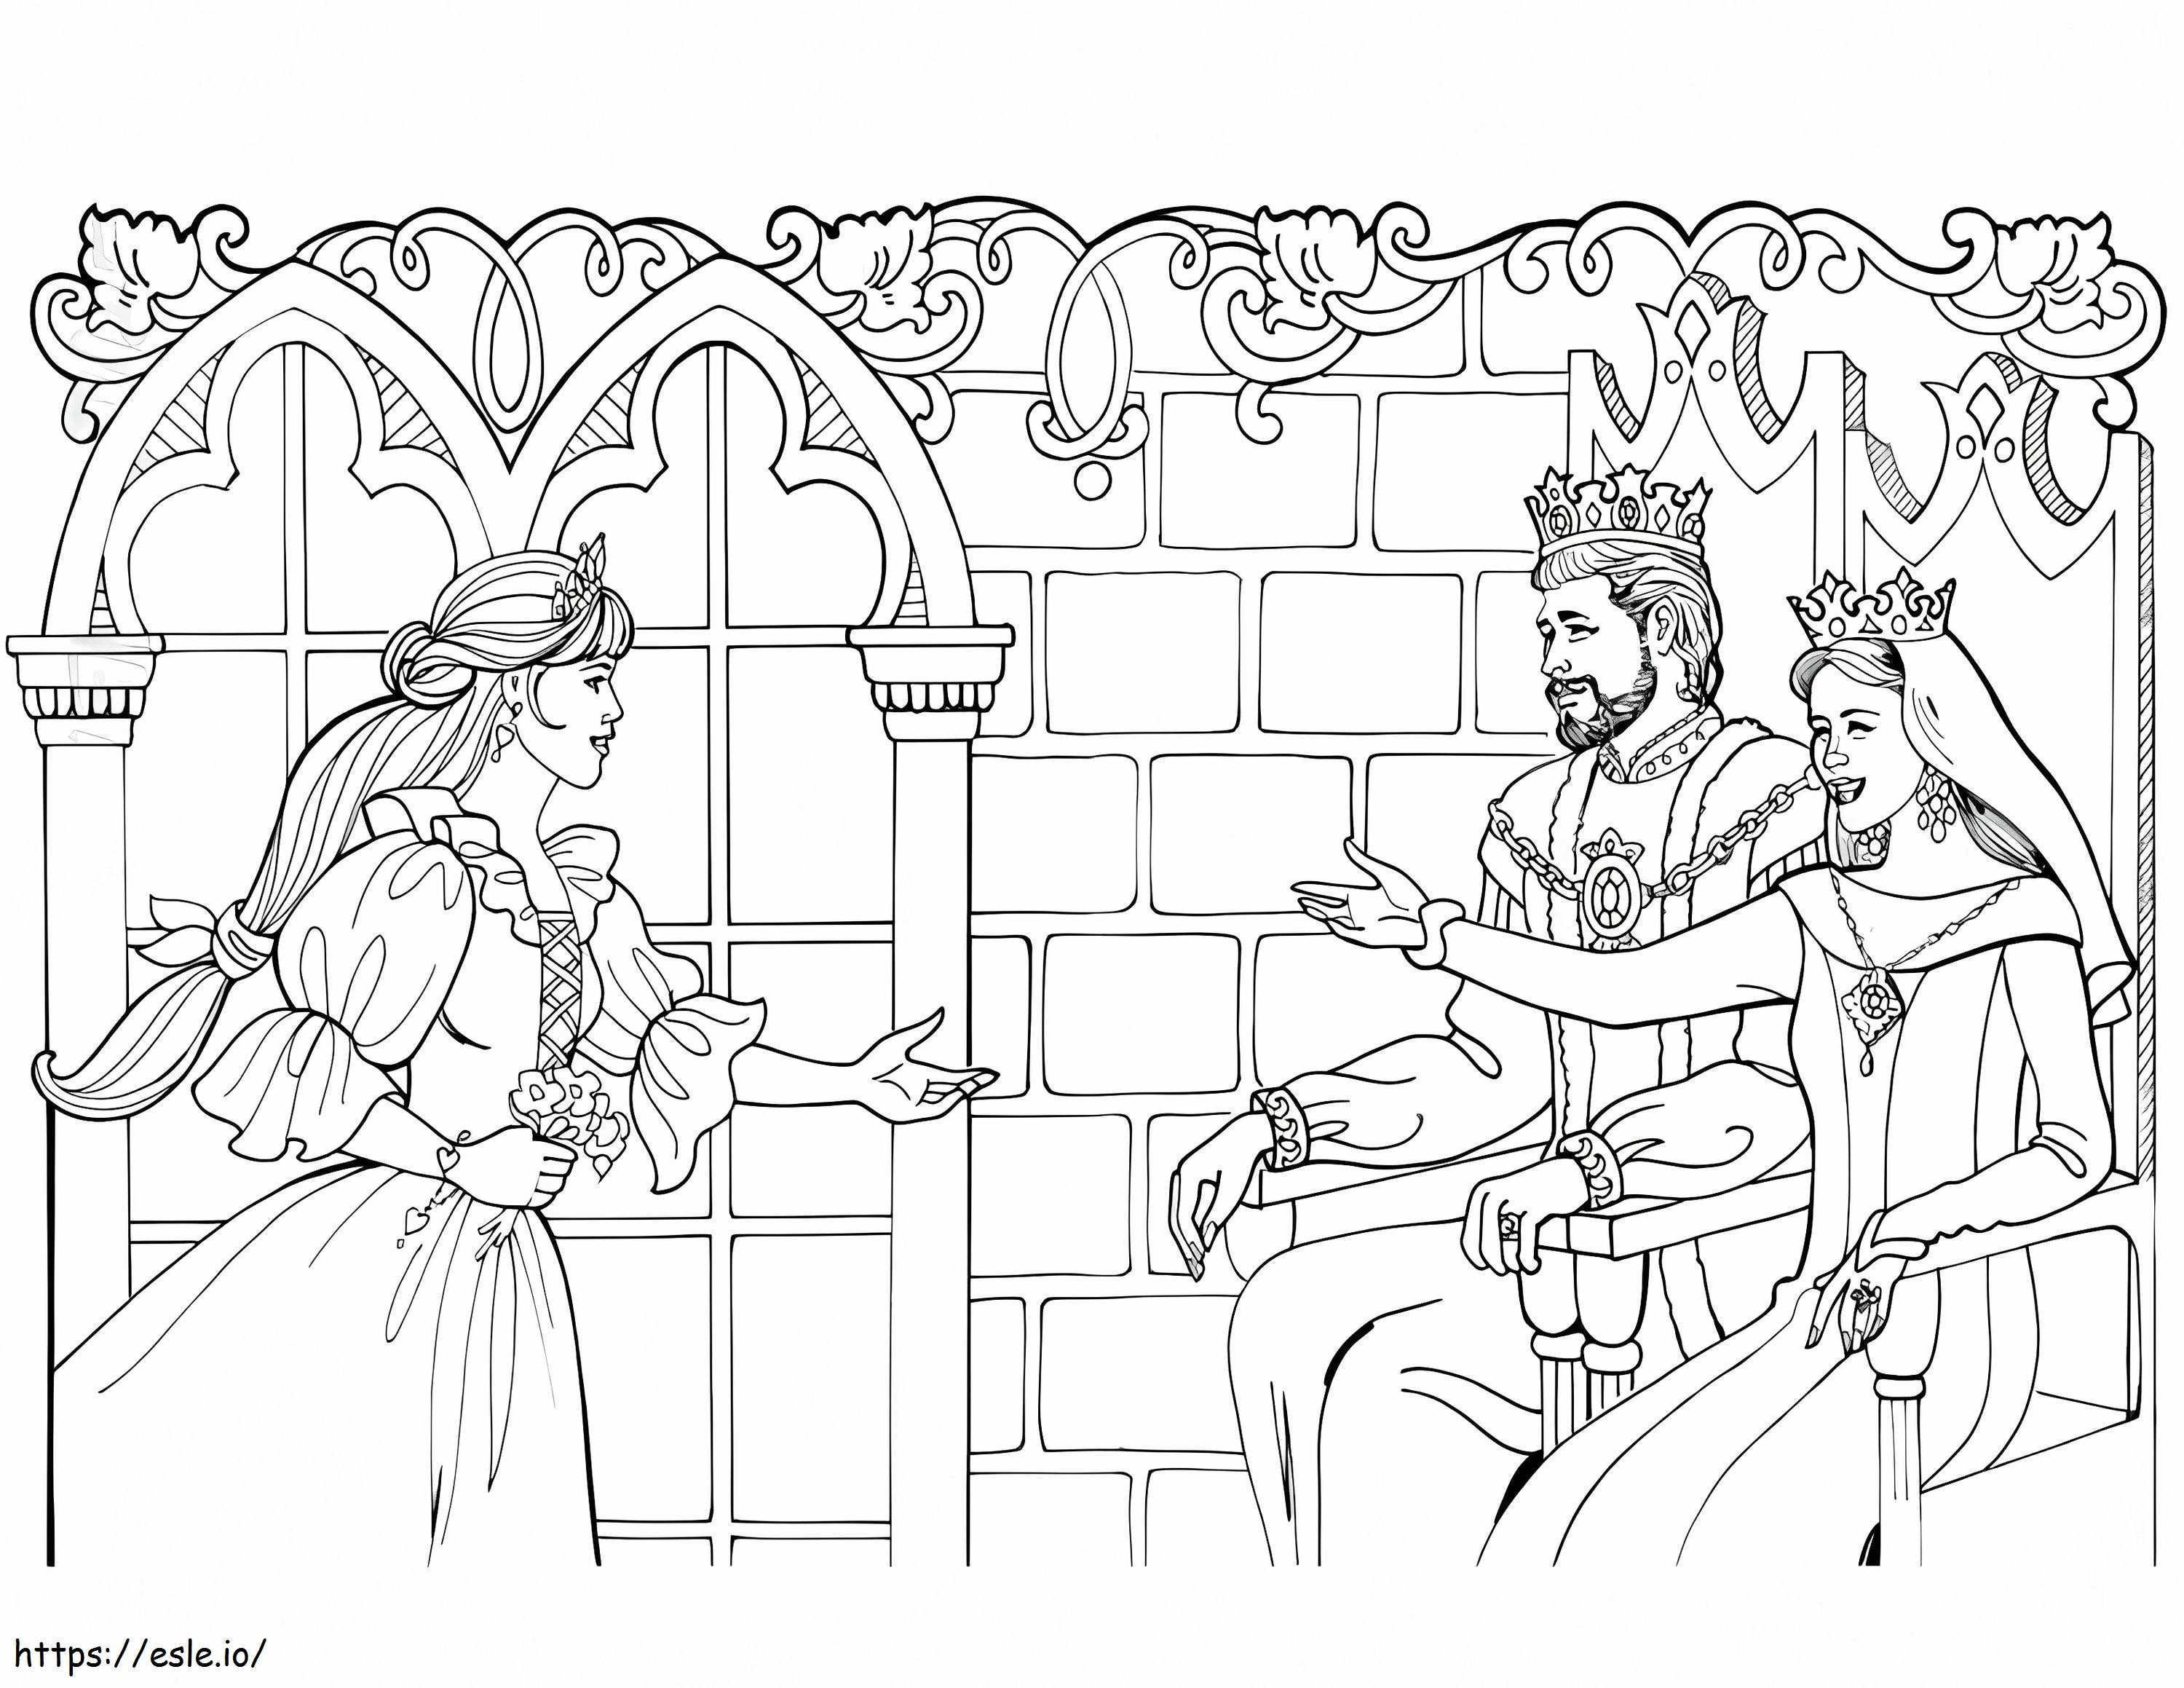 La principessa Leonora con il re e la regina da colorare